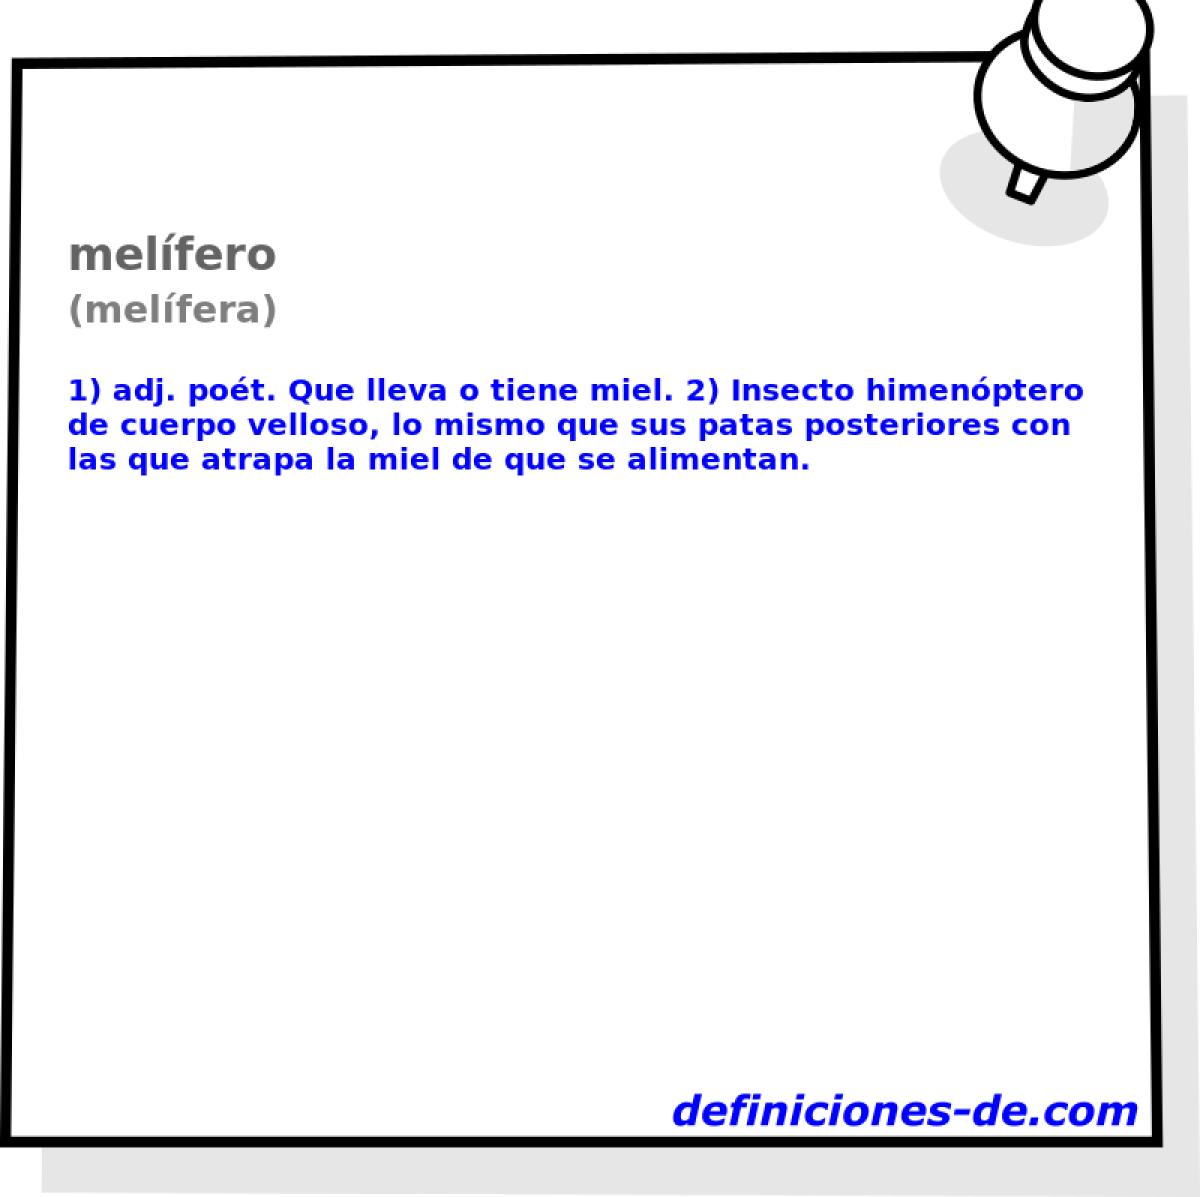 melfero (melfera)